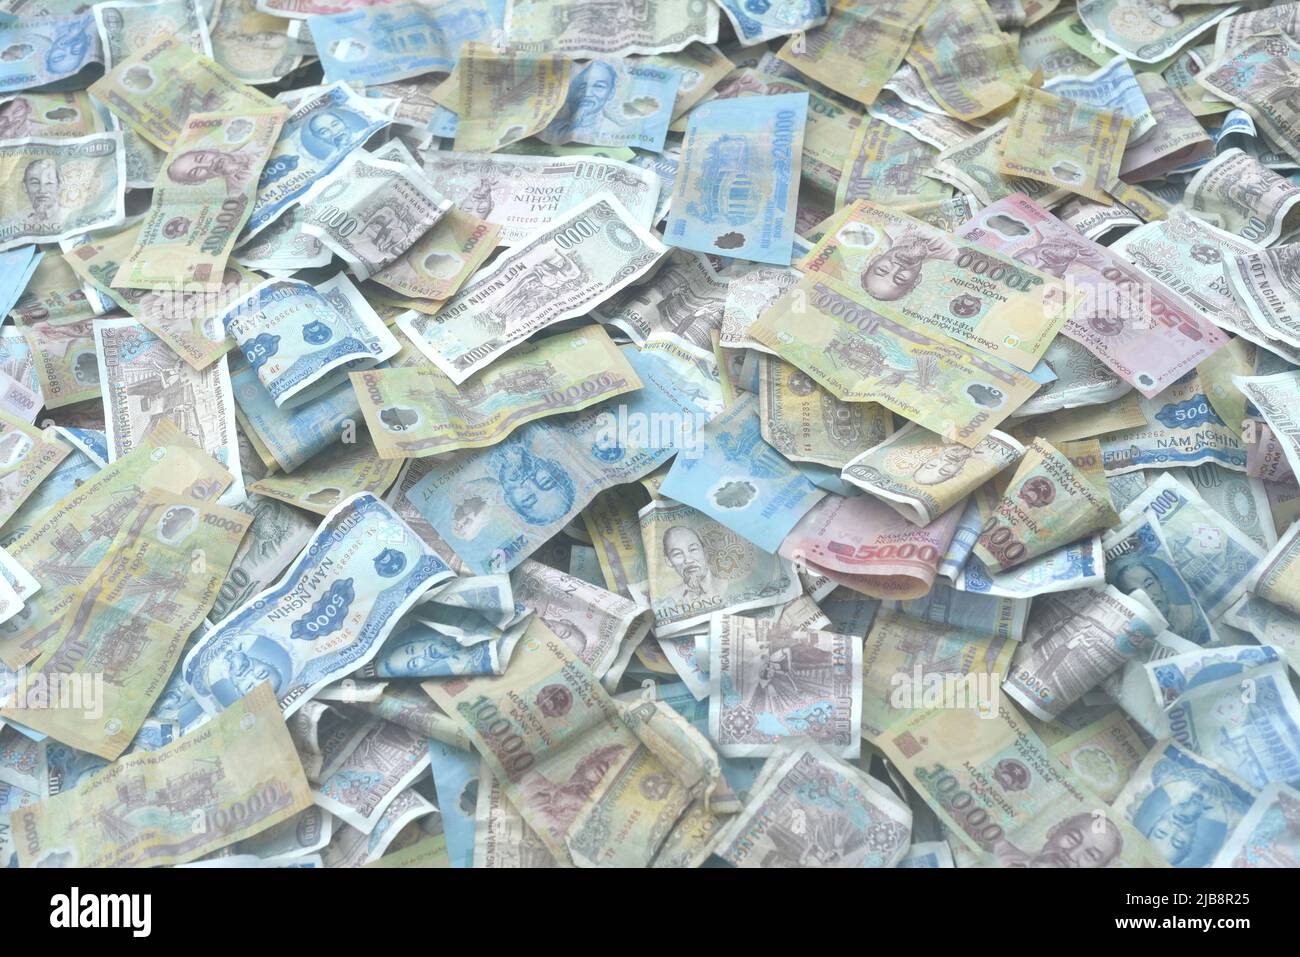 Many vietnamese dongs money close up Stock Photo